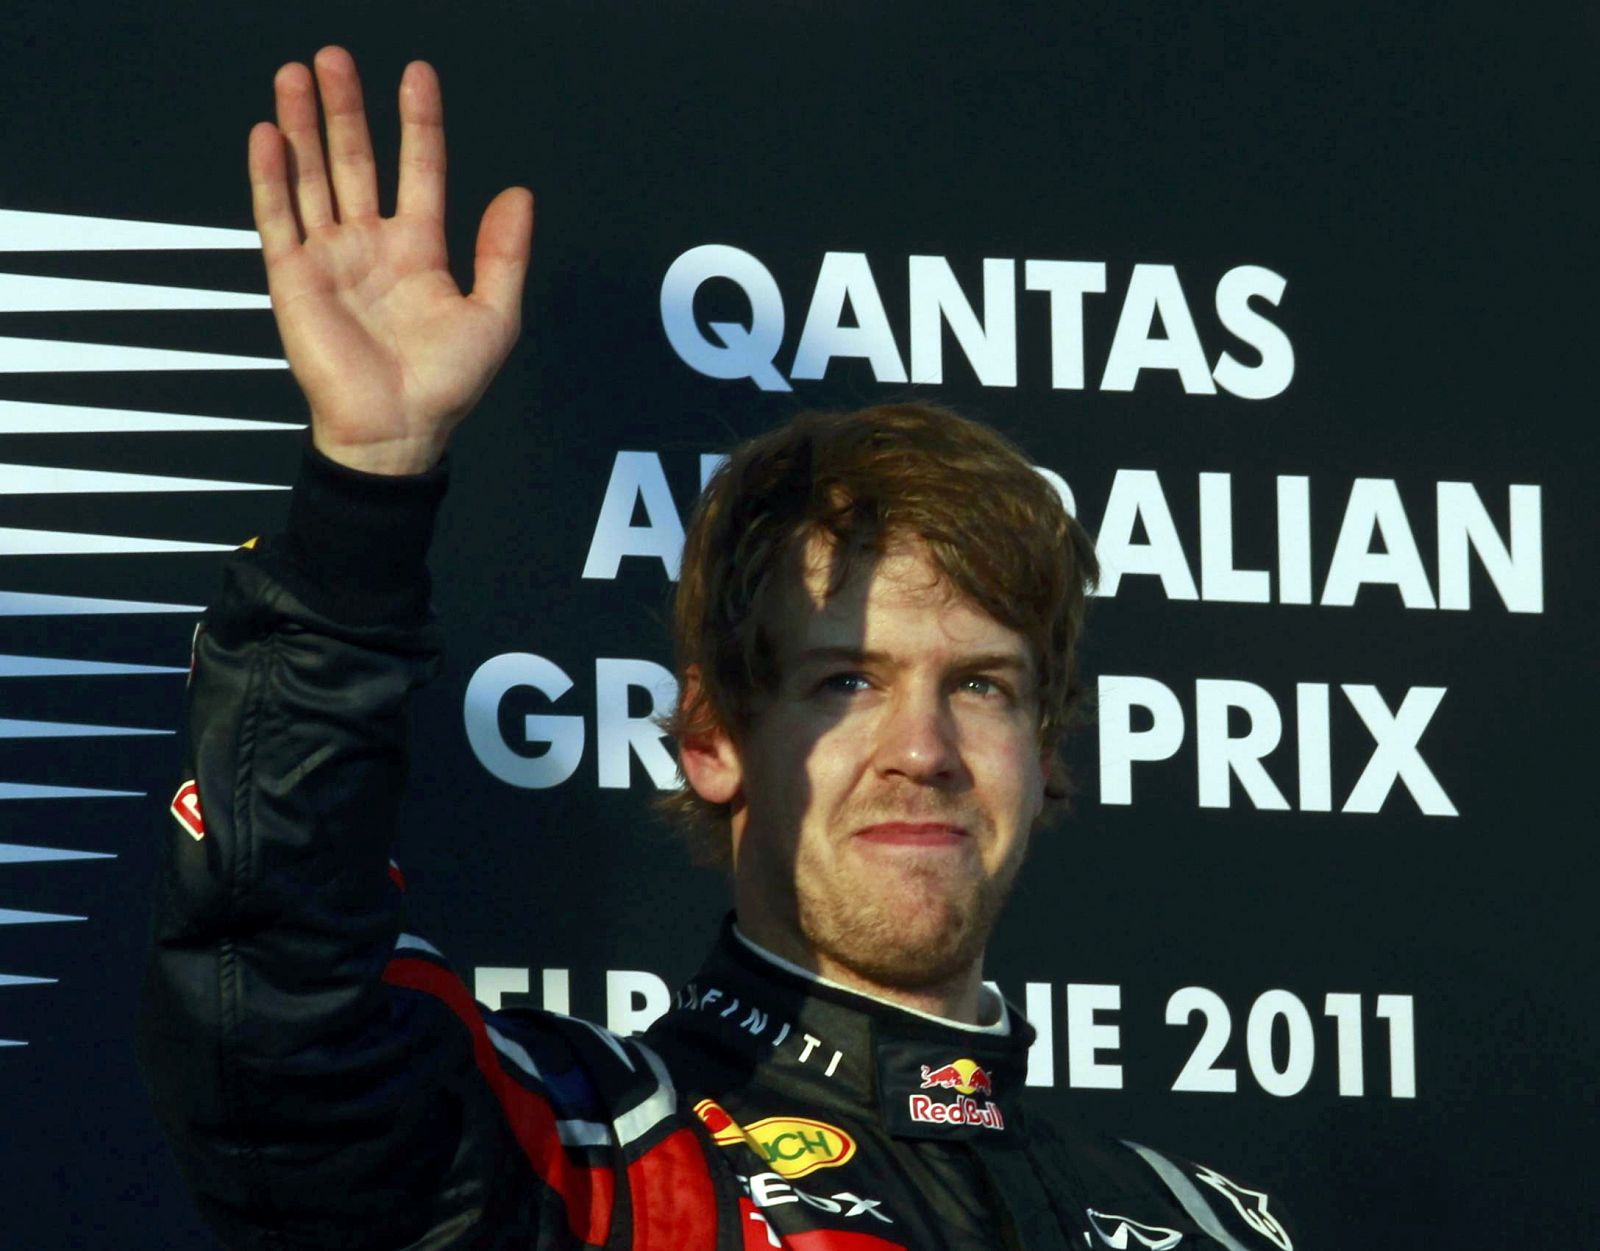 El ganador en el Gran Premio de Australia, Sebastian Vettel, saluda desde el podio de Melbourne.